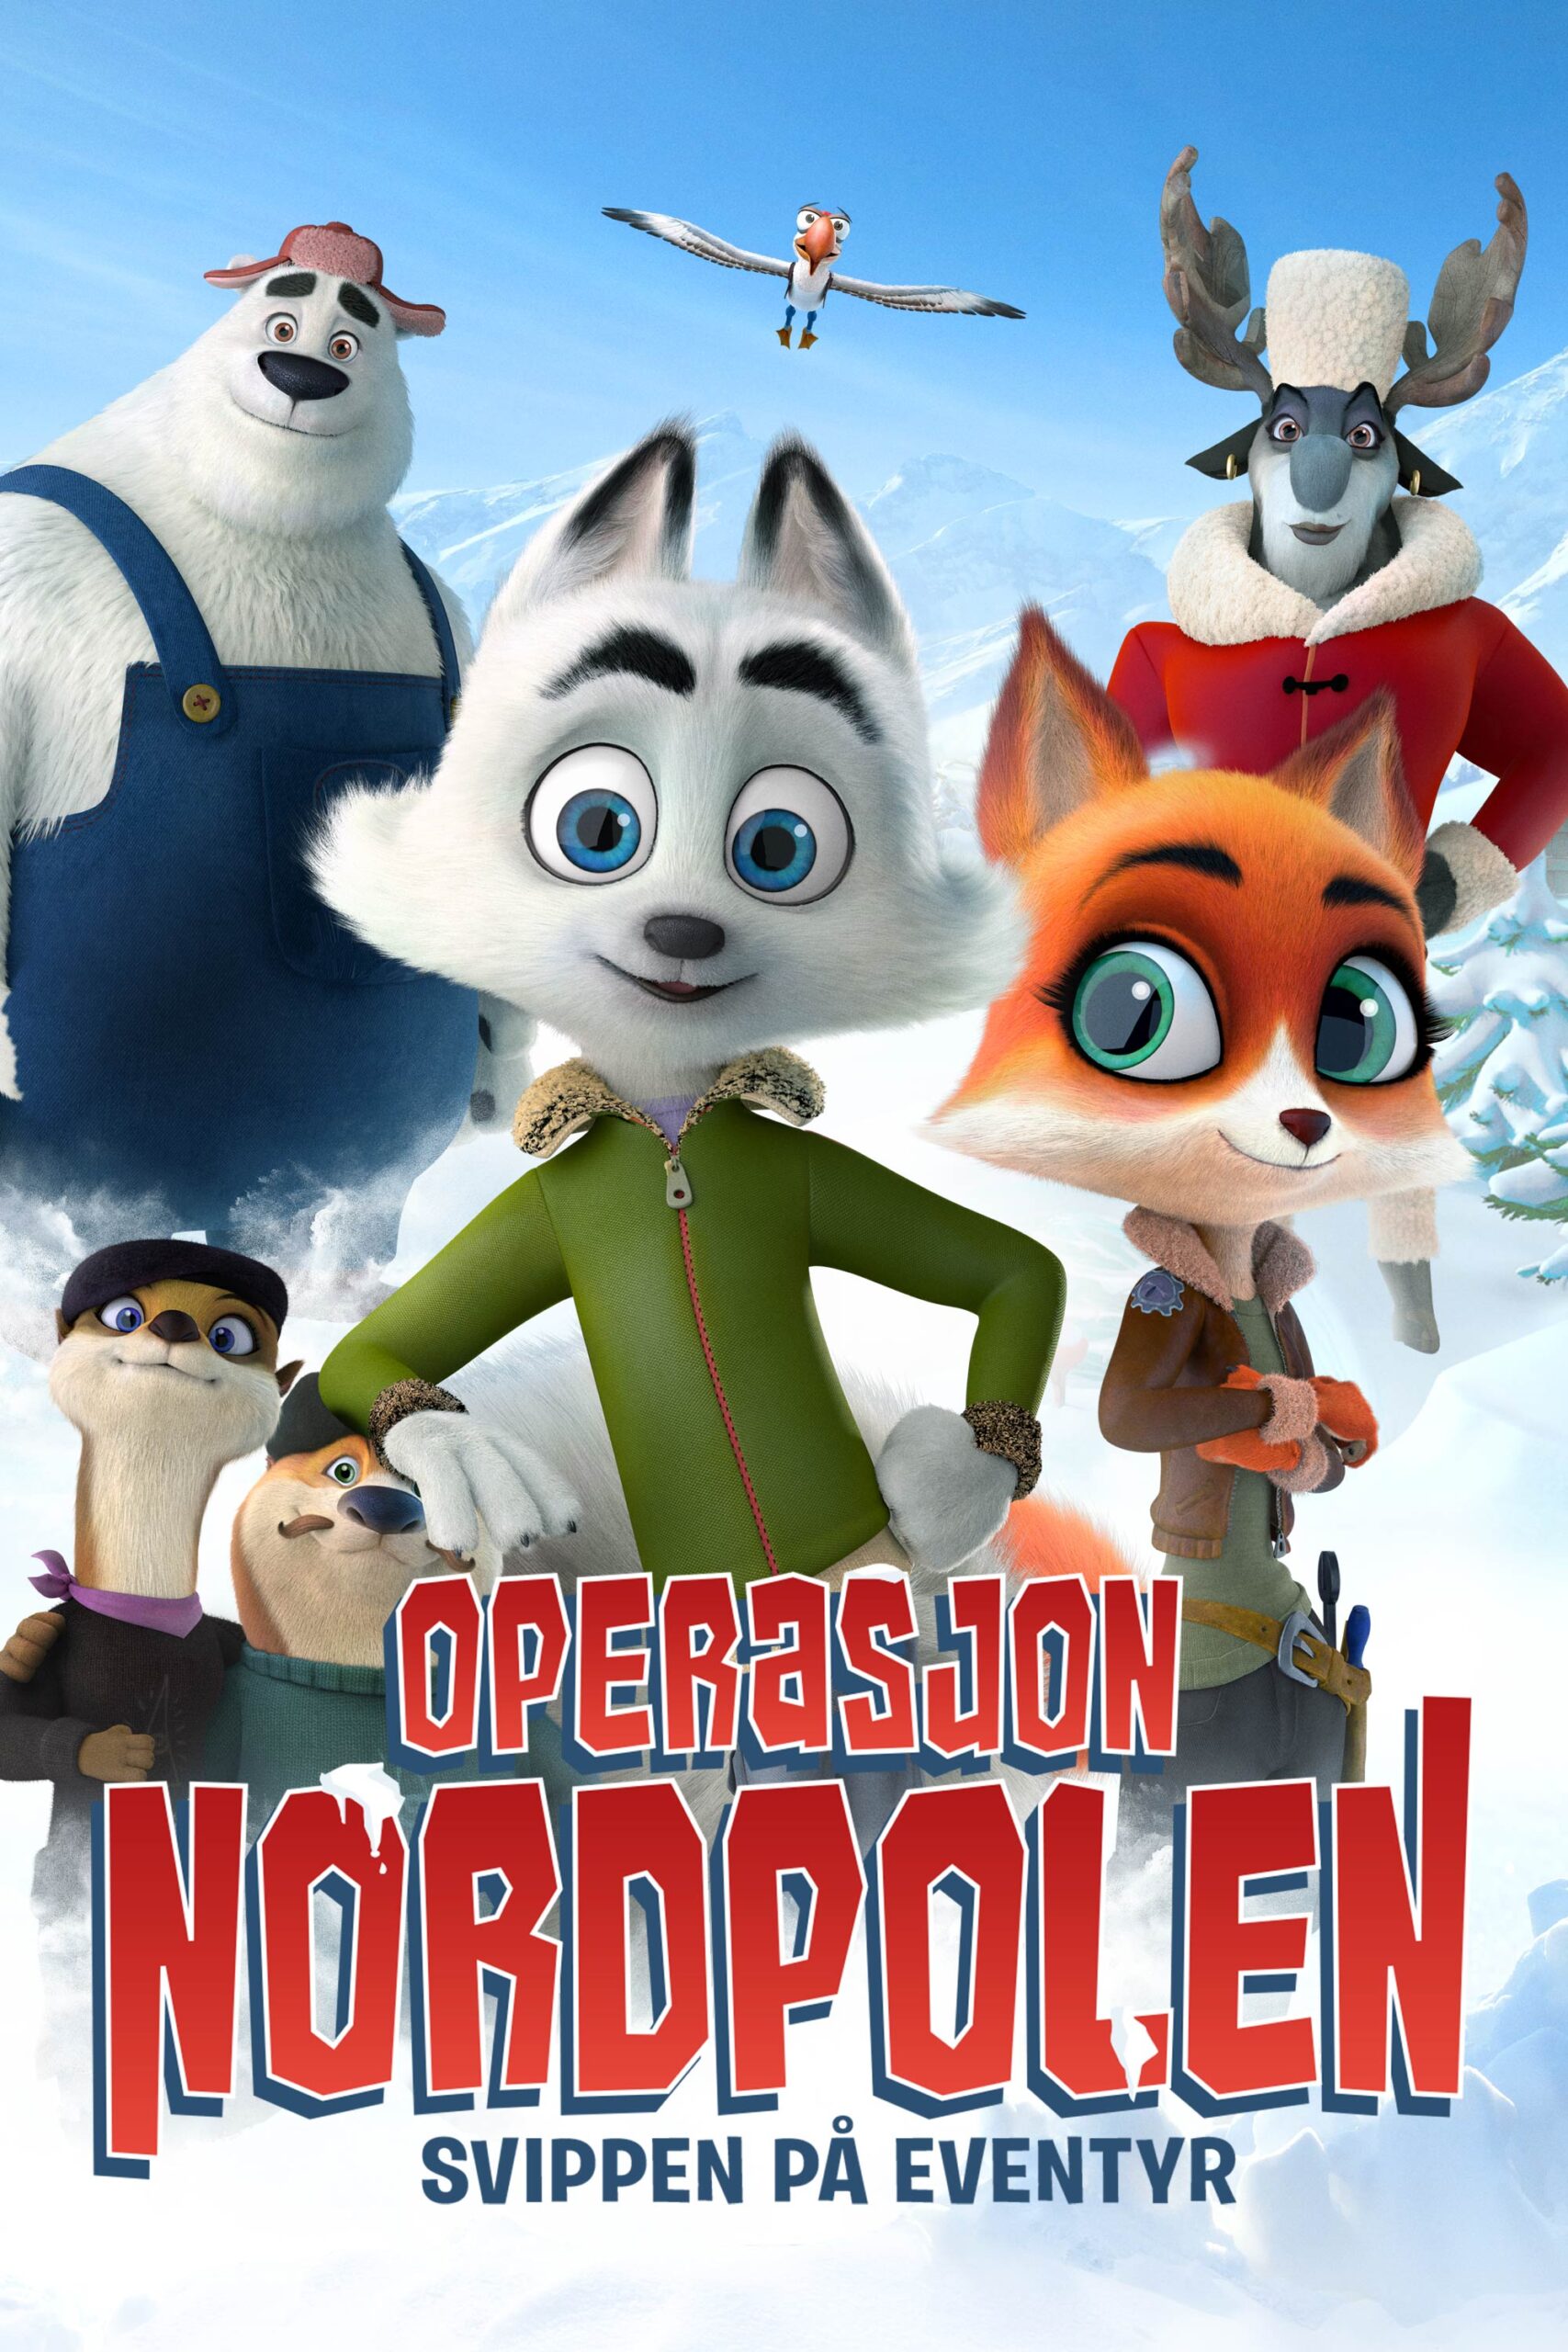 Read more about the article Operasjon Nordpolen